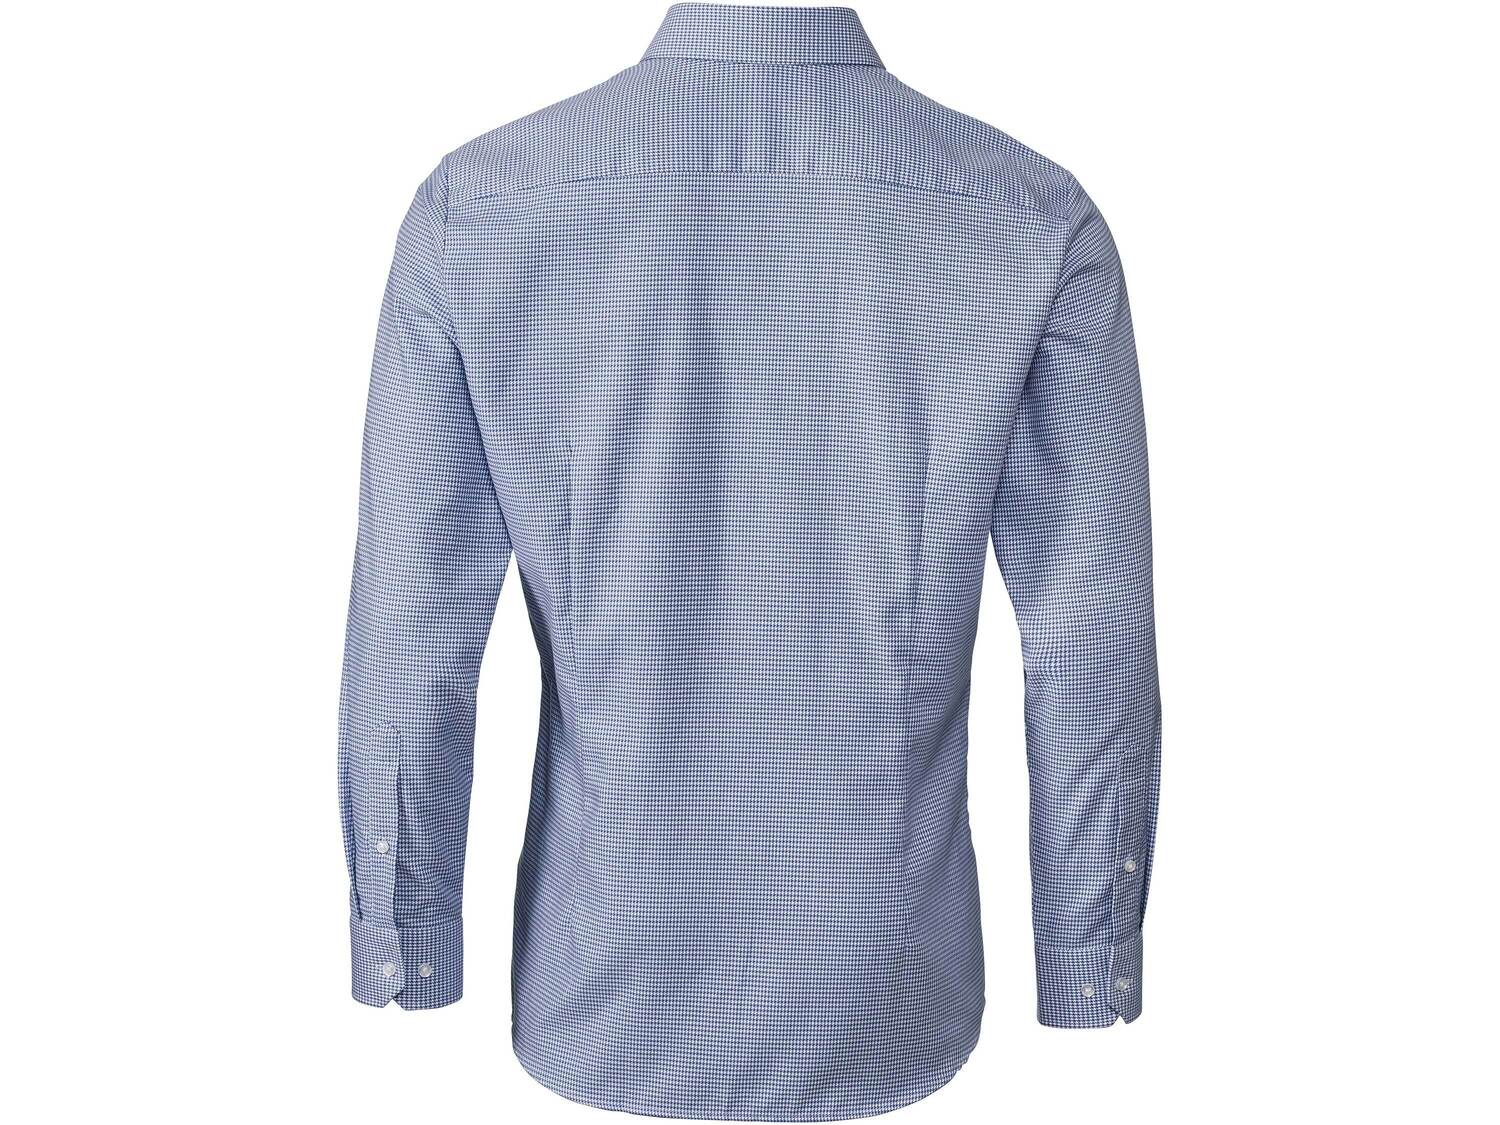 Koszula biznesowa , cena 49,99 PLN 
- rozmiary: 39-43
- 100% bawełny
- wkładki ...